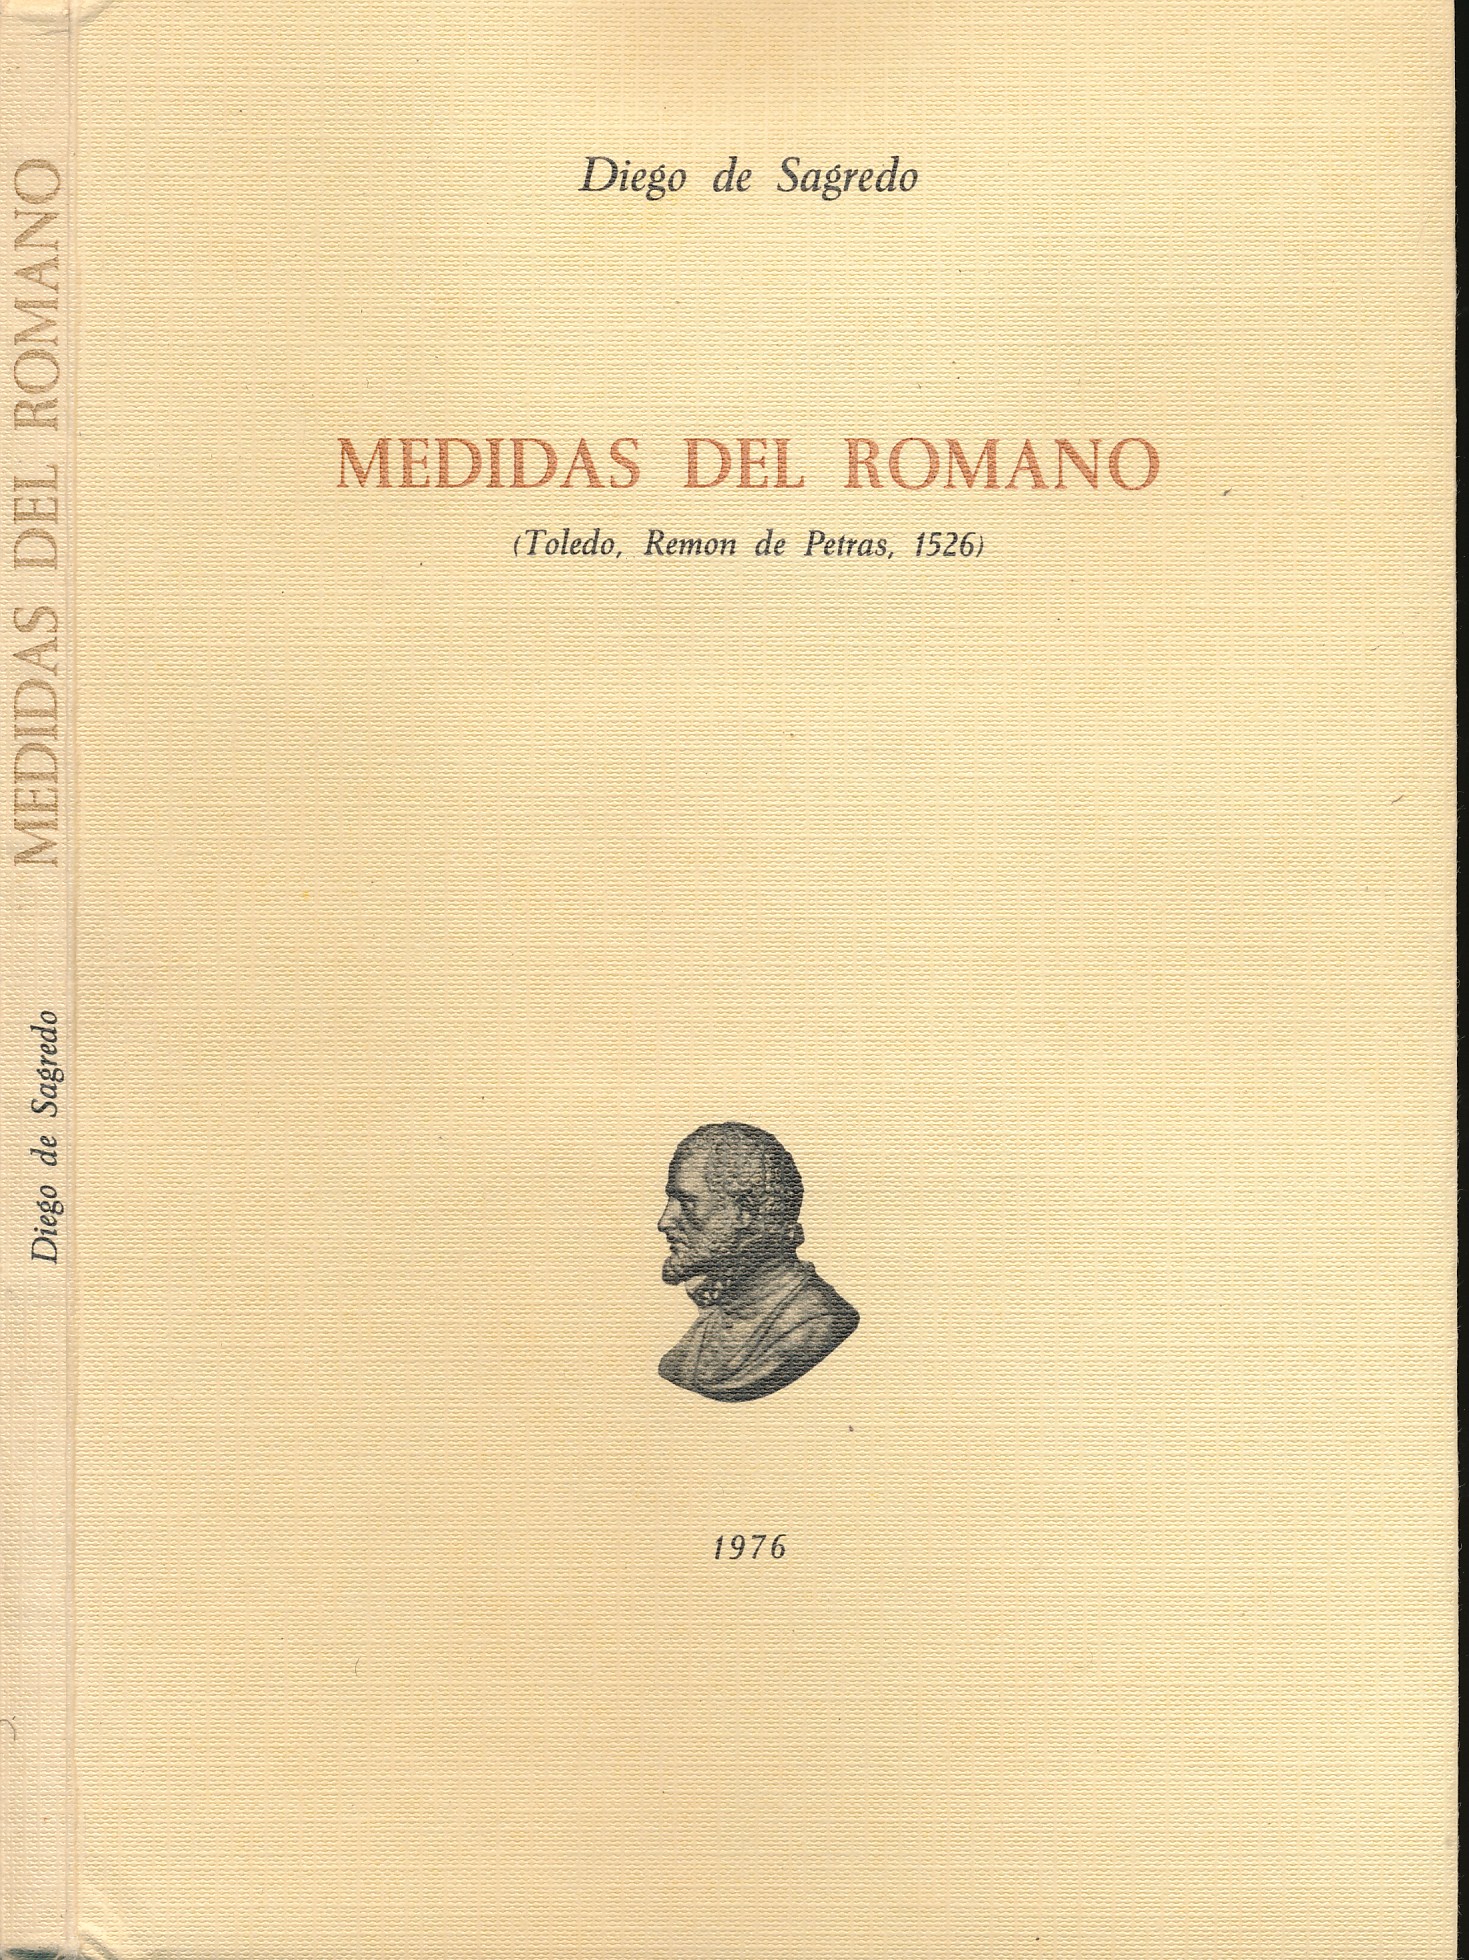 Medidas del Romano. Limited edition